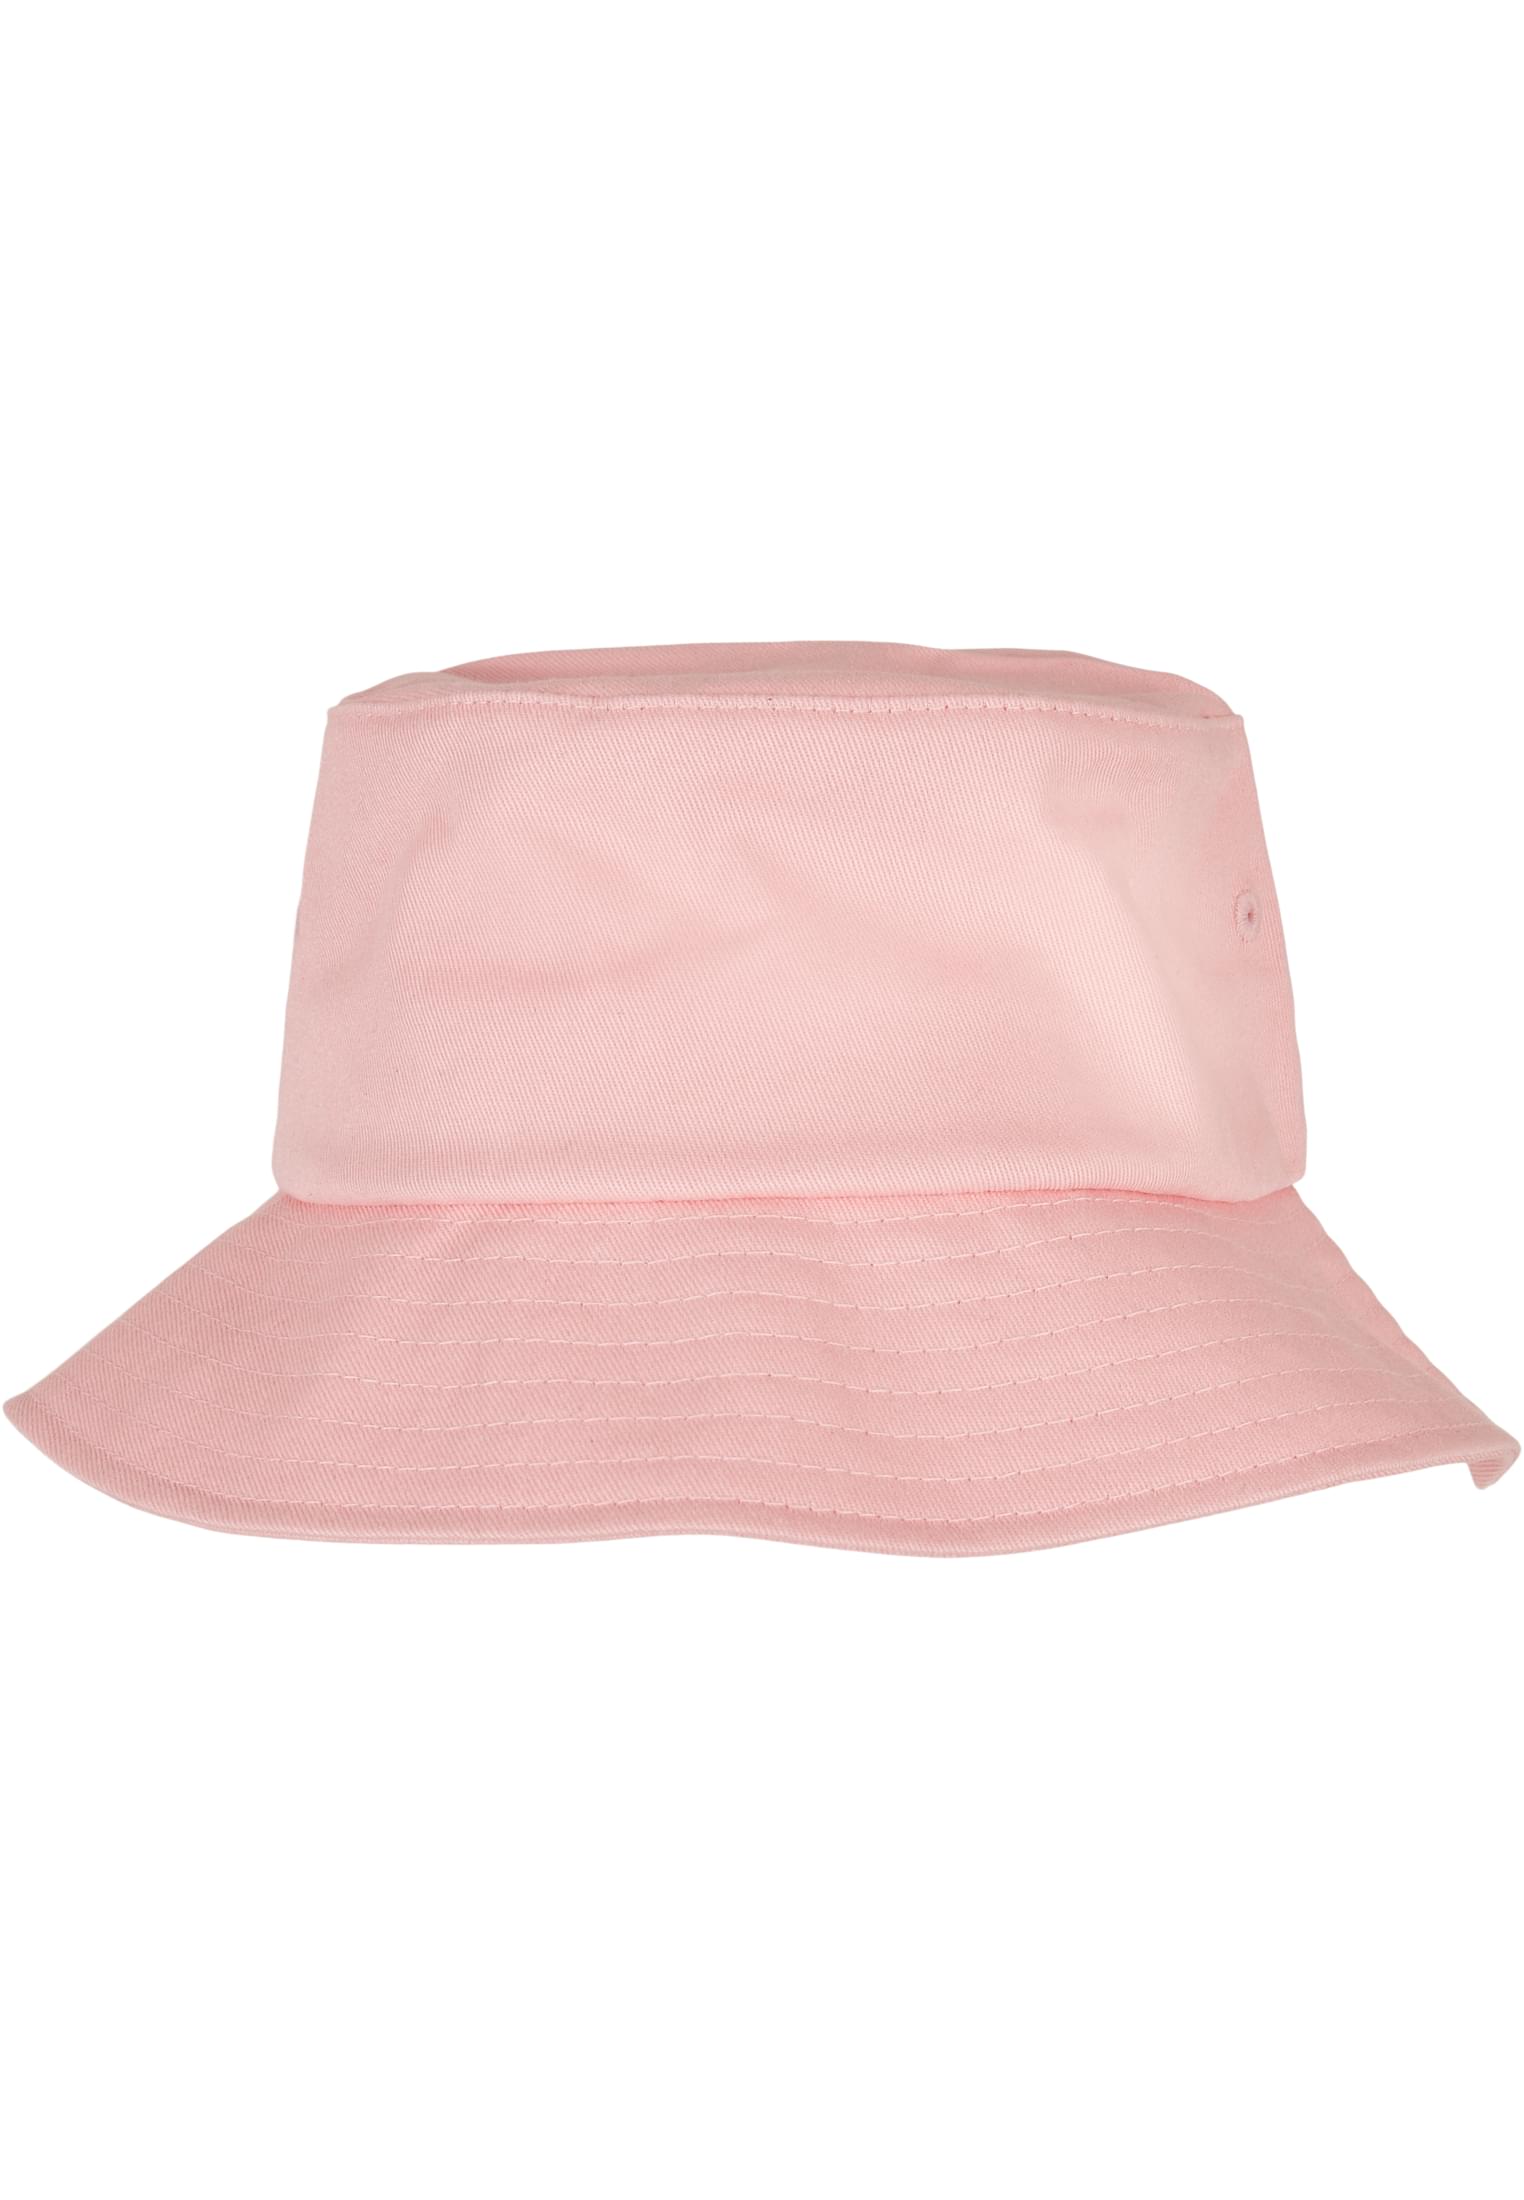 Bucket Hat-5003 Flexfit Cotton Twill